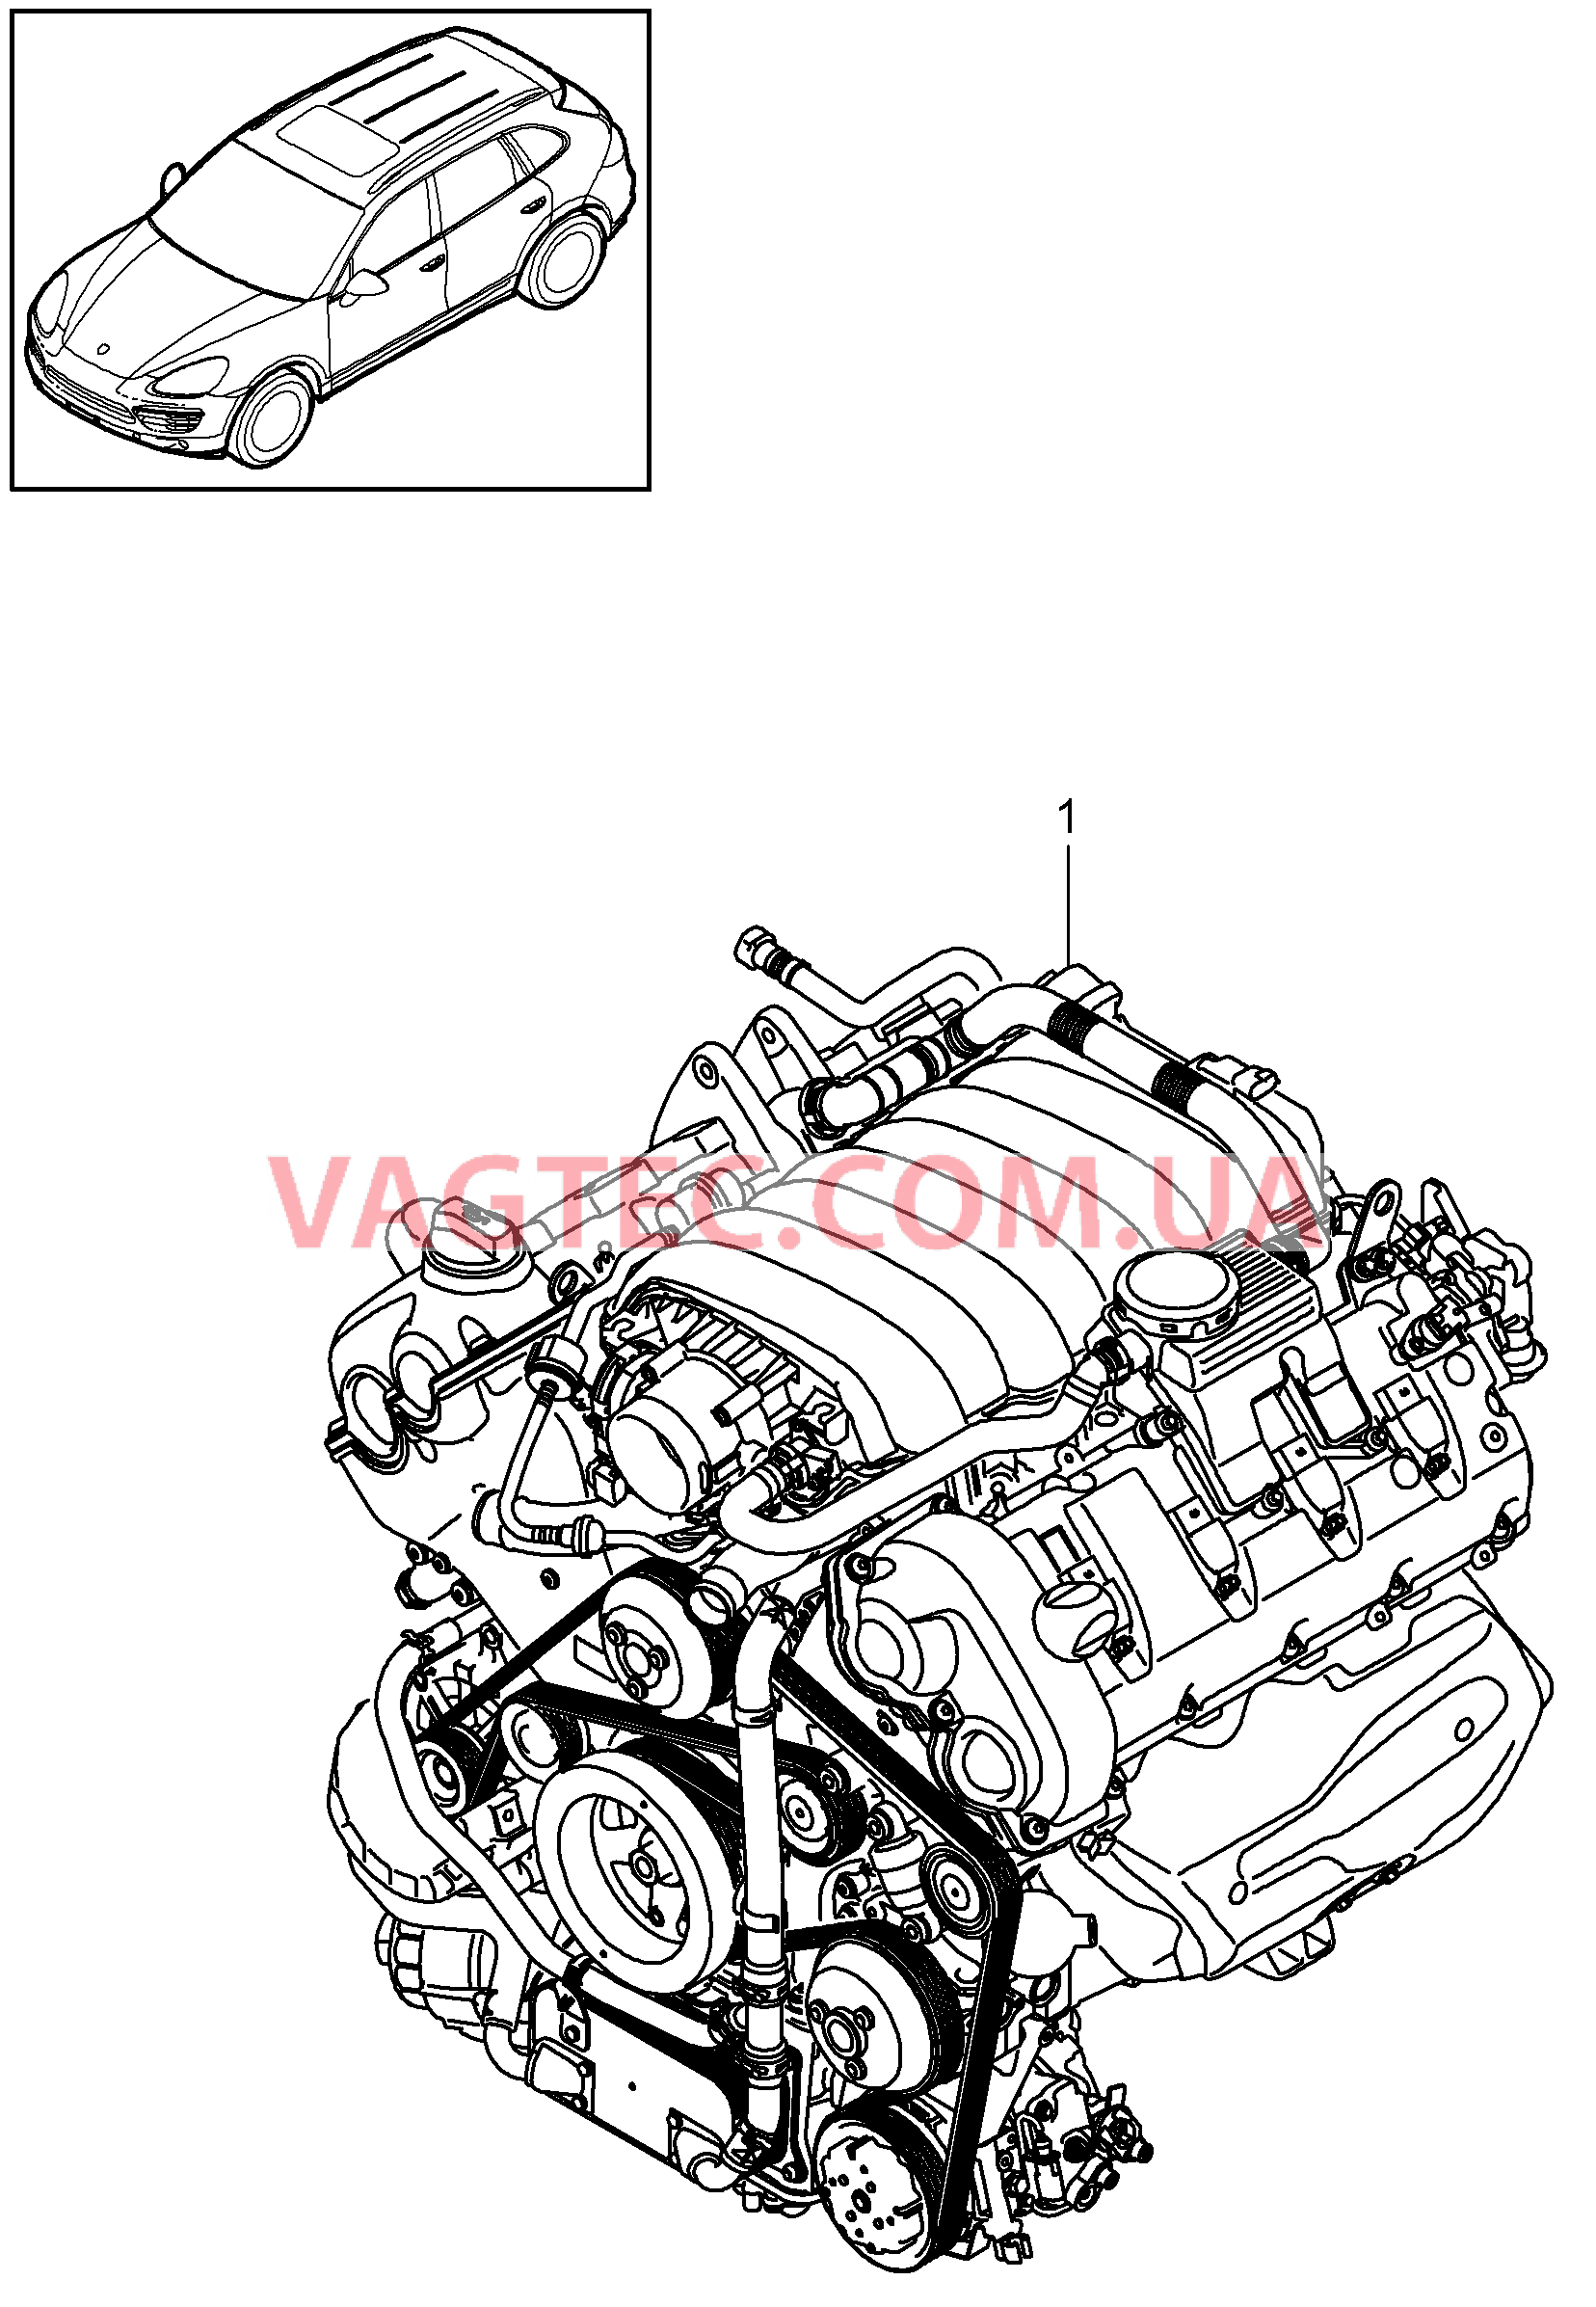 101-000 Запасной двигатель, без, Ведомый диск, TIPTRONIC, без, Компрессор
						
						M48.02/52 для PORSCHE Cayenne 2011-2018